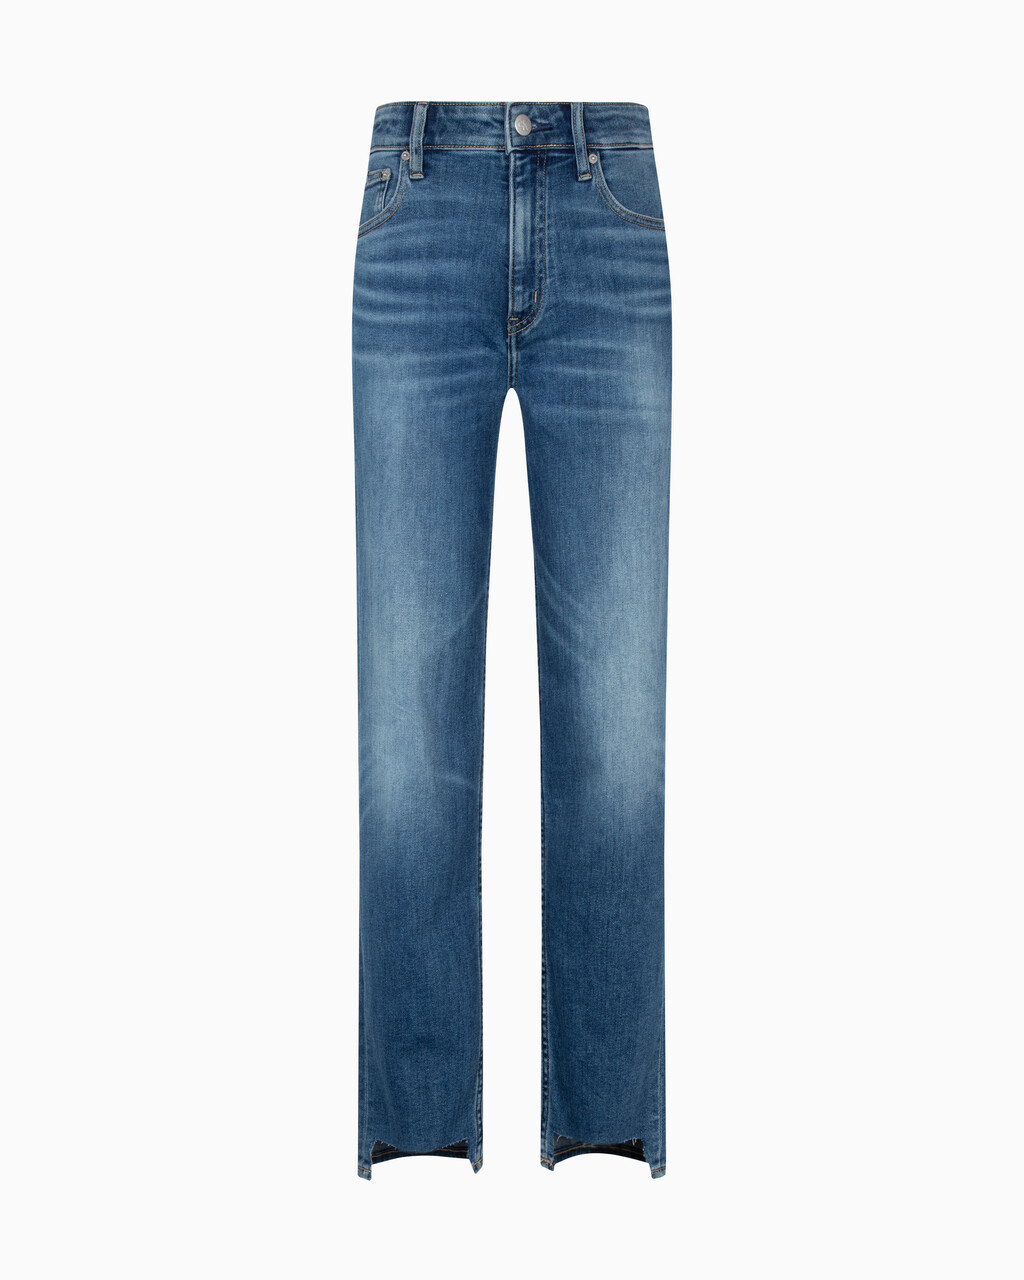 Italian Denim High Rise Slim Straight Jeans, Med Blue Side Emboss, hi-res